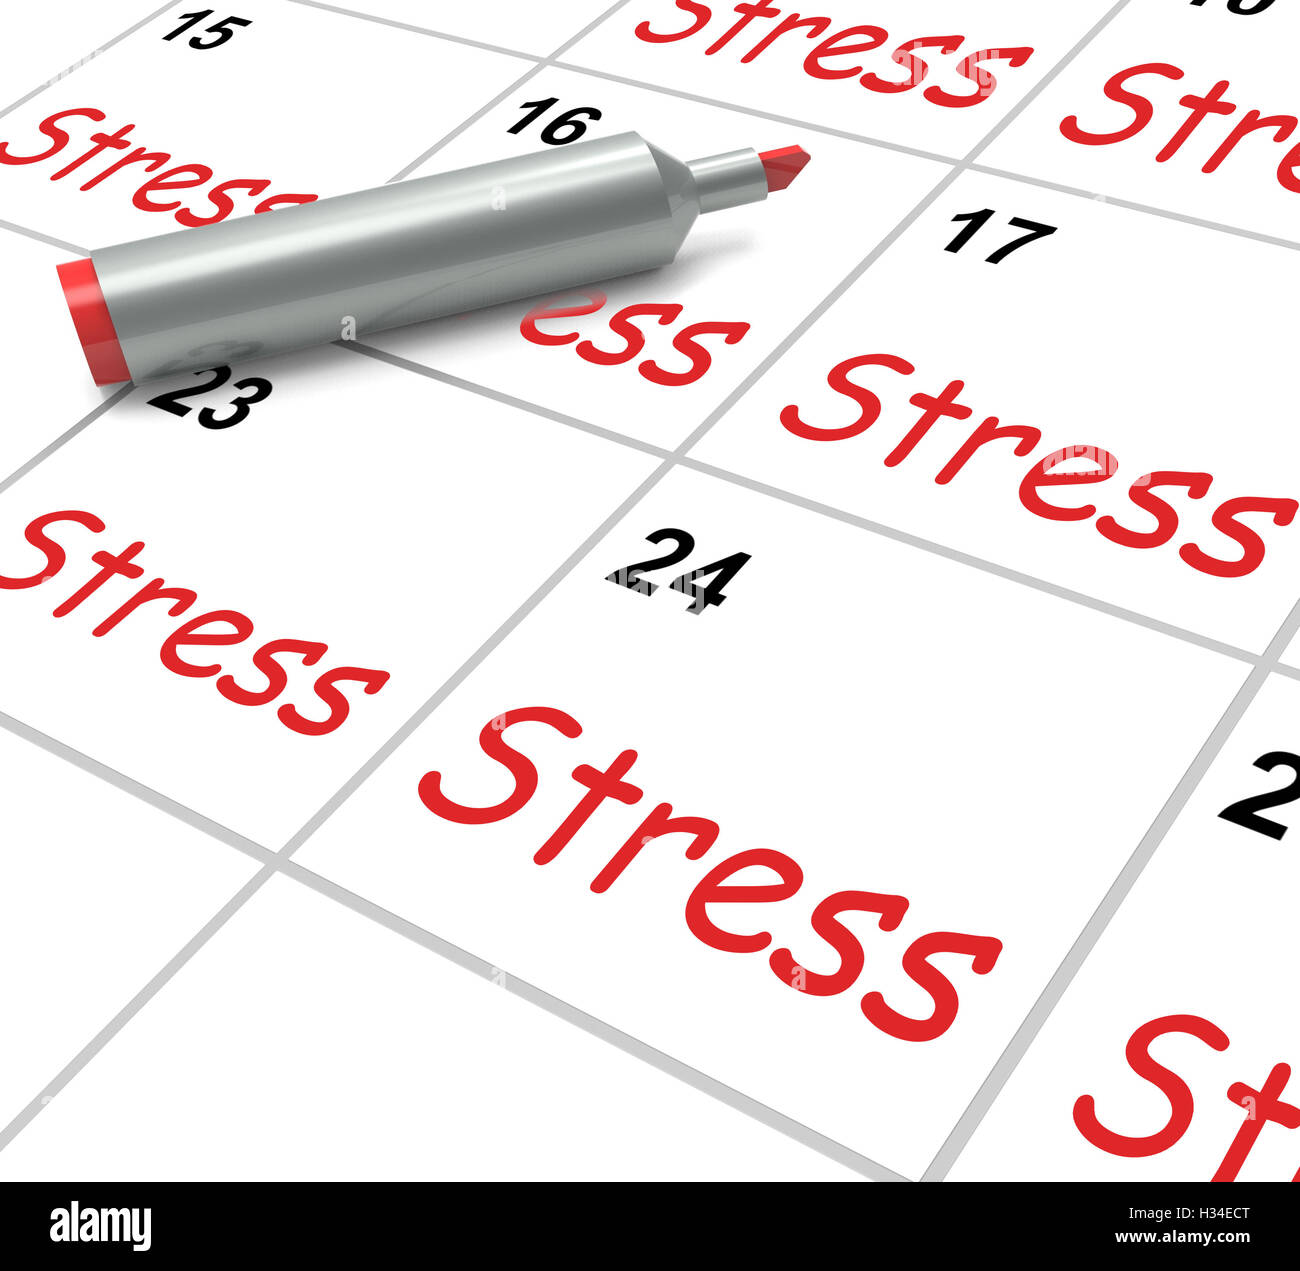 Calendario de estrés significa presionados tenso y ansioso Foto de stock